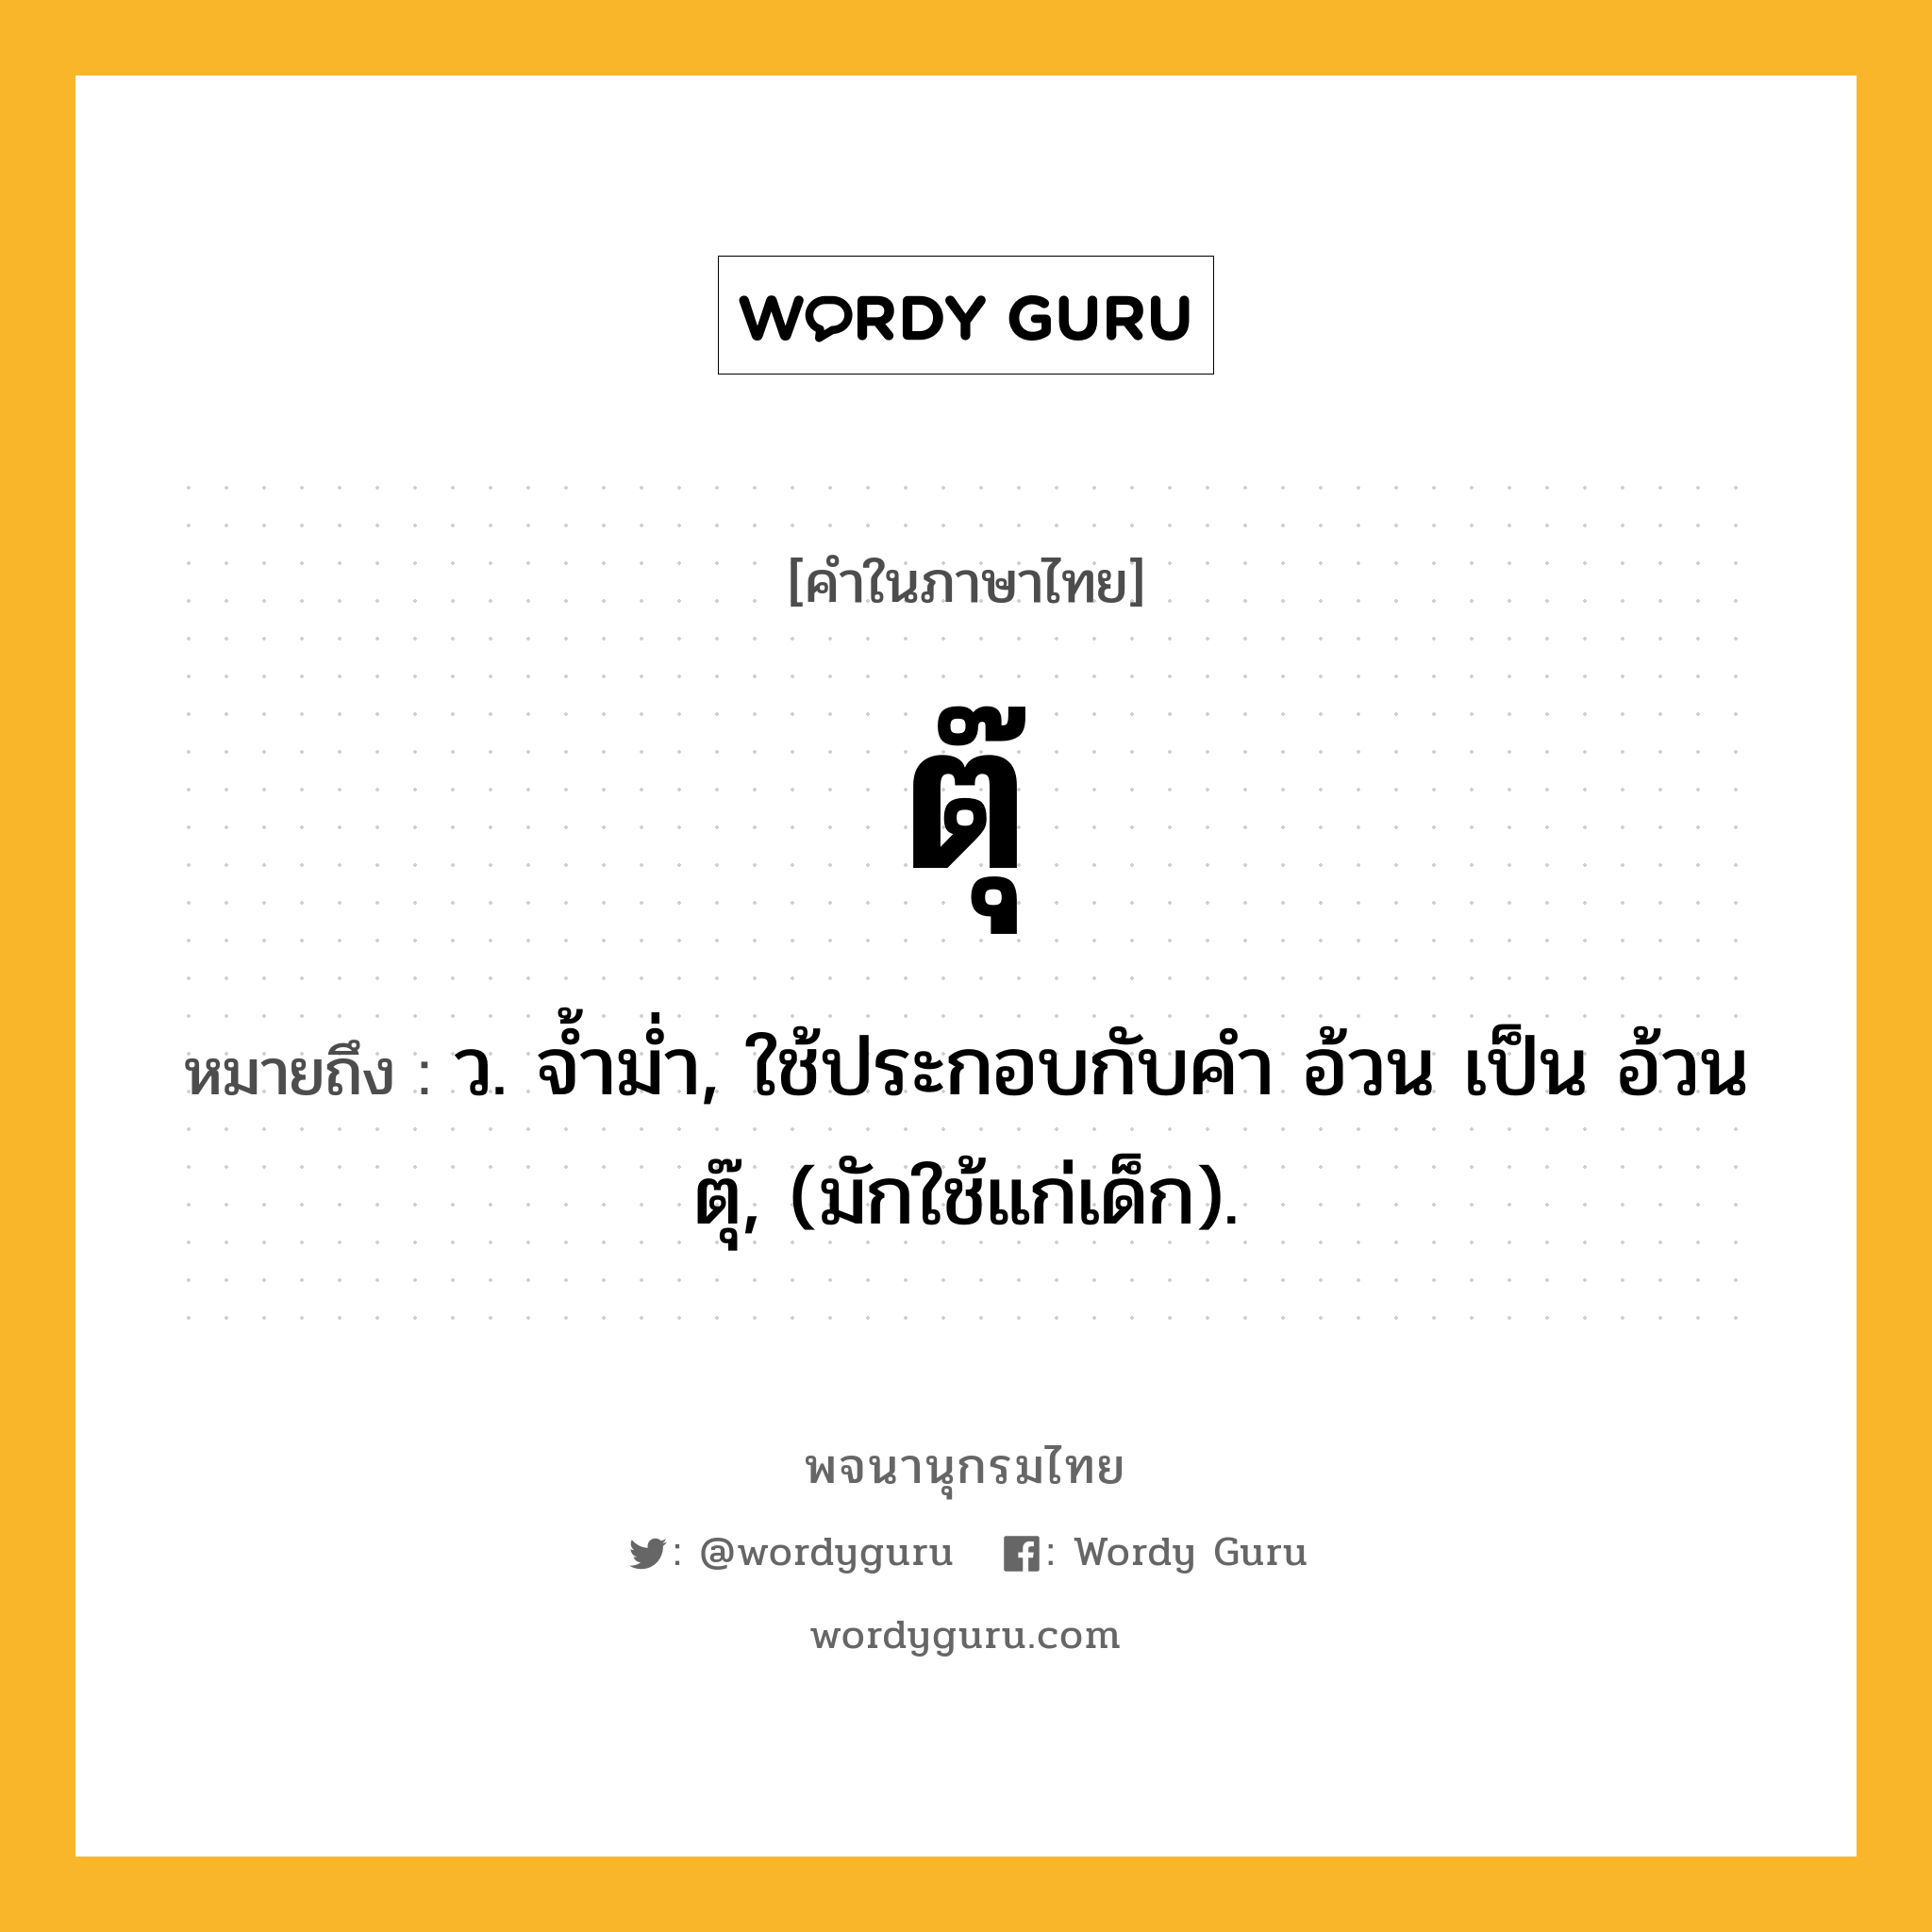 ตุ๊ ความหมาย หมายถึงอะไร?, คำในภาษาไทย ตุ๊ หมายถึง ว. จํ้ามํ่า, ใช้ประกอบกับคำ อ้วน เป็น อ้วนตุ๊, (มักใช้แก่เด็ก).